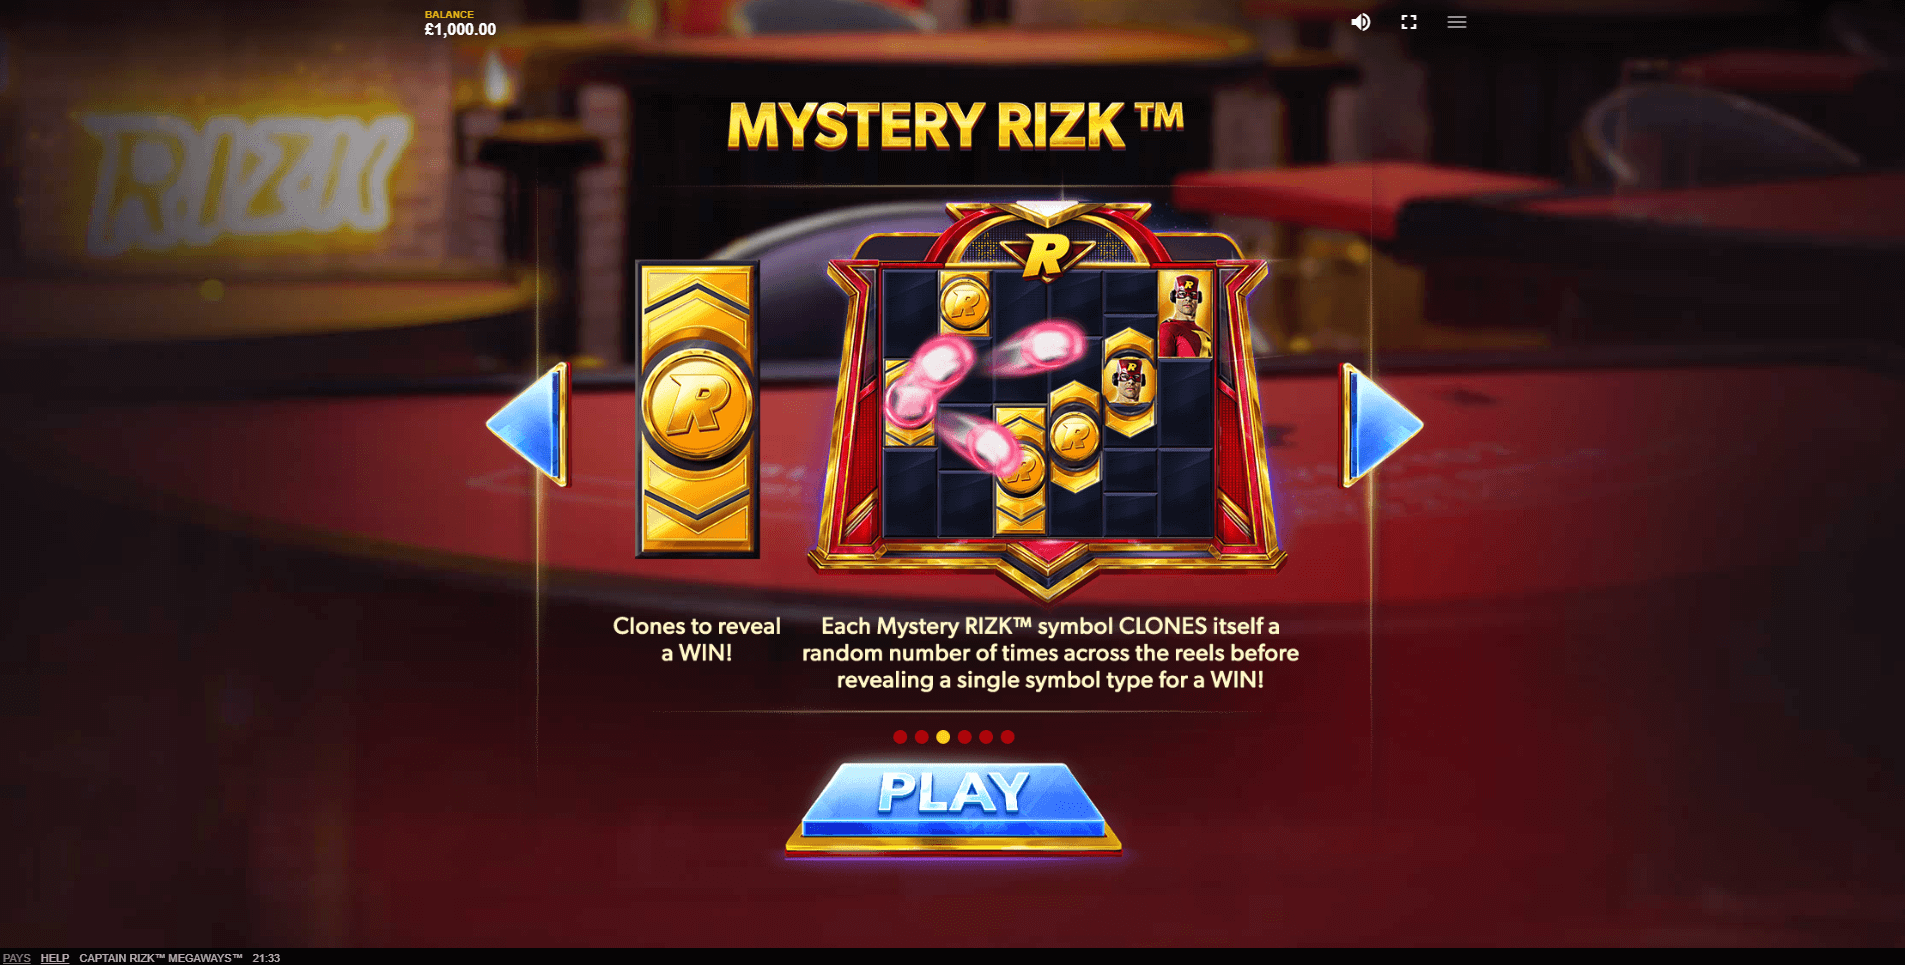 captain rizk megaways slot machine detail image 1